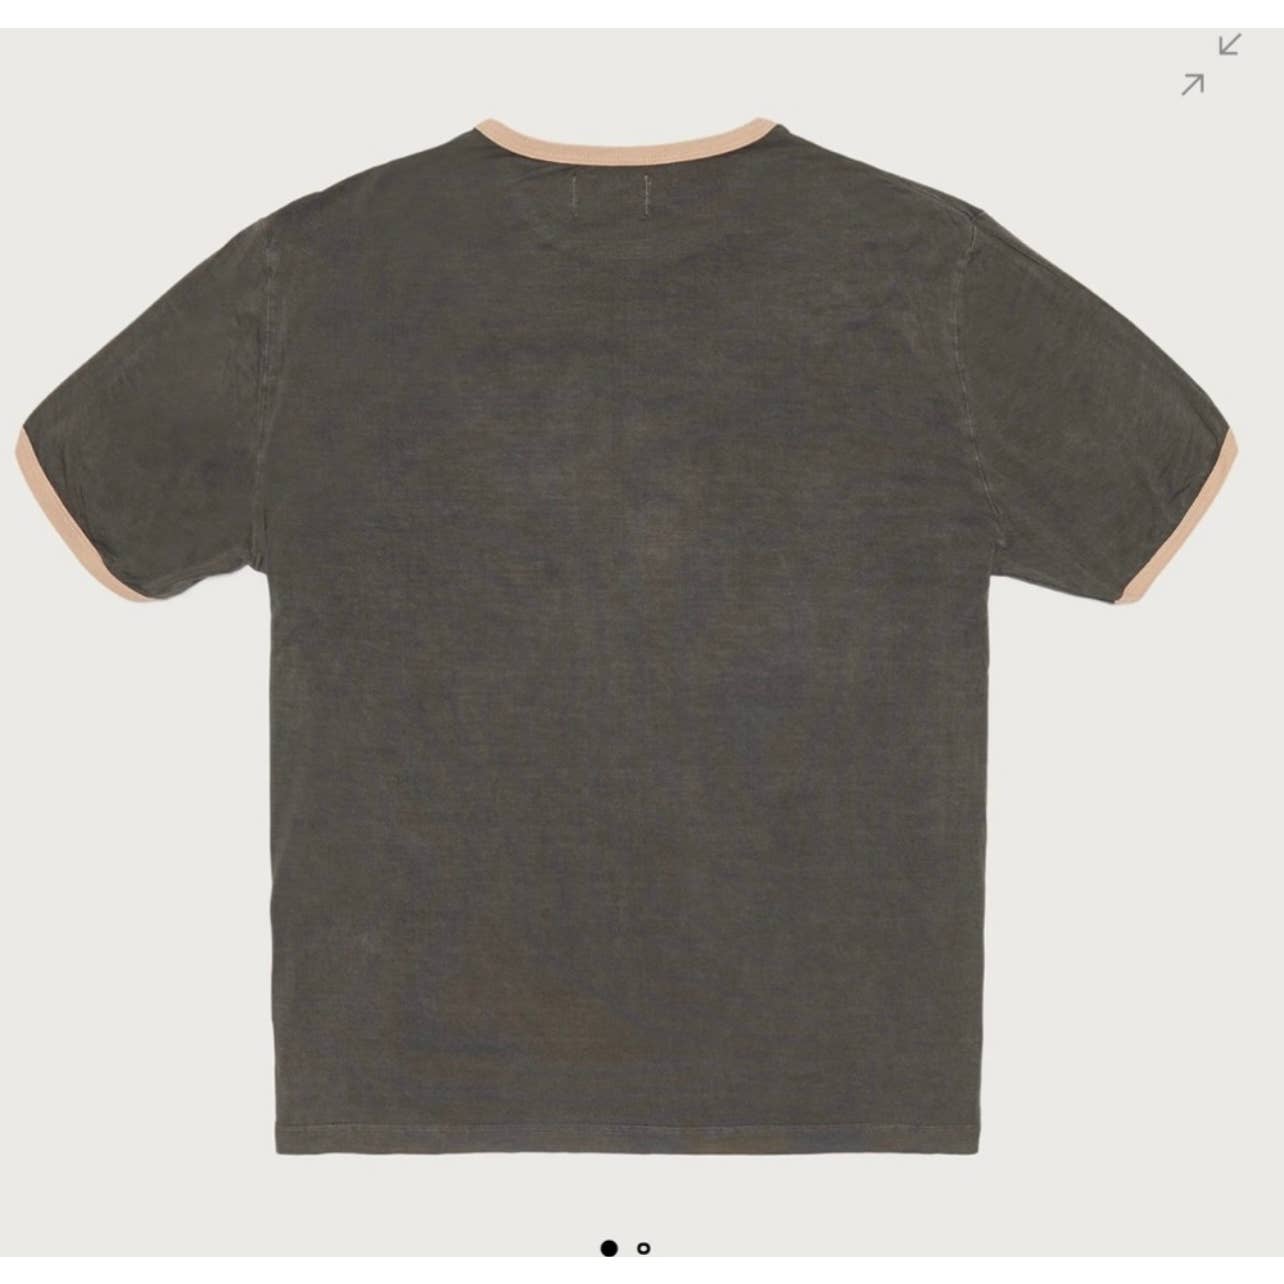 Honor the Gift Men's "4 the Inner City" Ringer Tee Shirt, Tan & Gray, Size XL